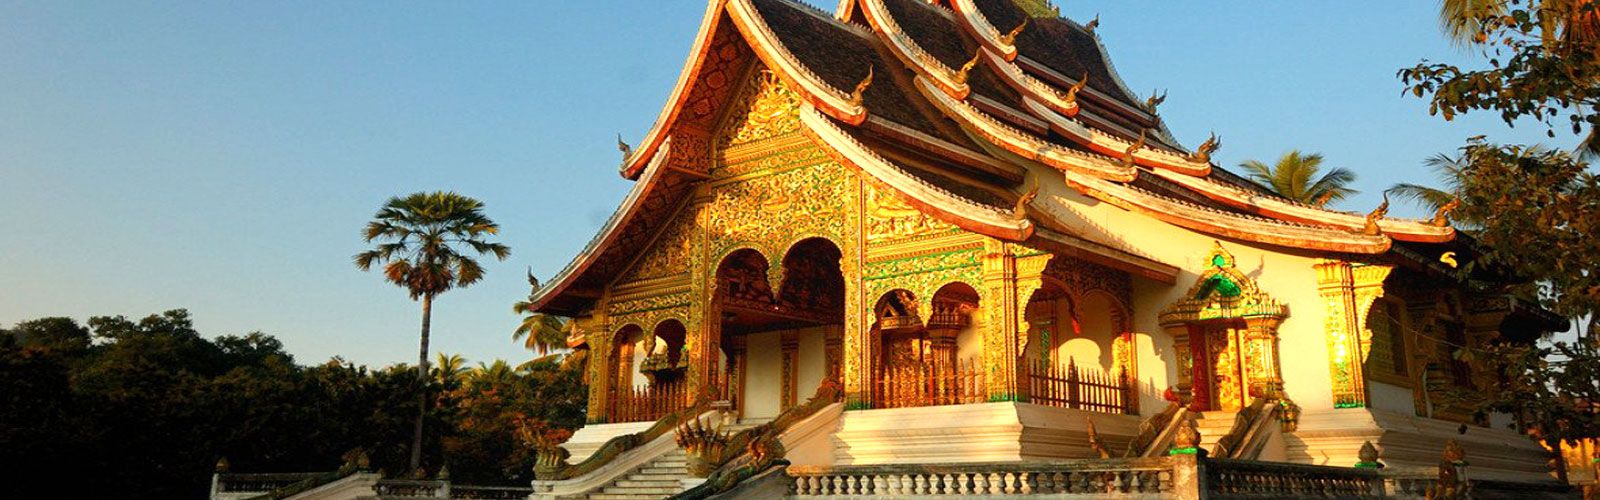 Destinations in Laos | Asianventure Tours